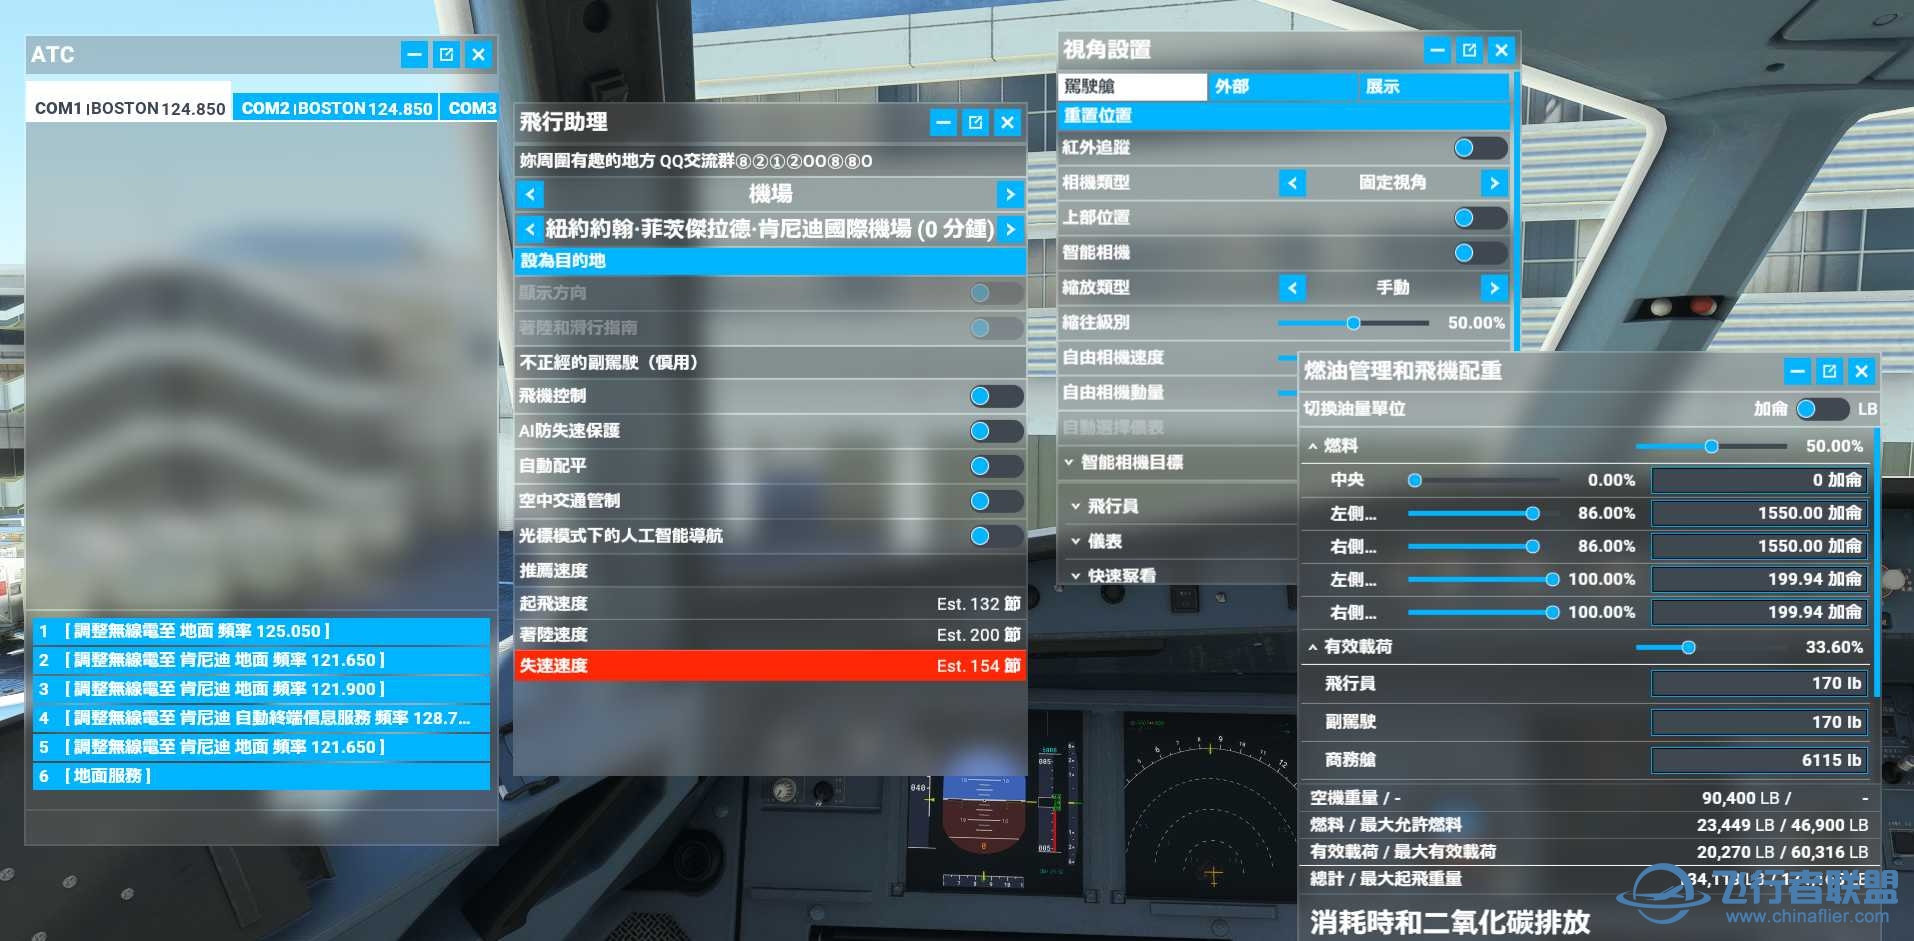 微软模拟飞行2020 1.18.14 繁体中文4.0发布版-7706 